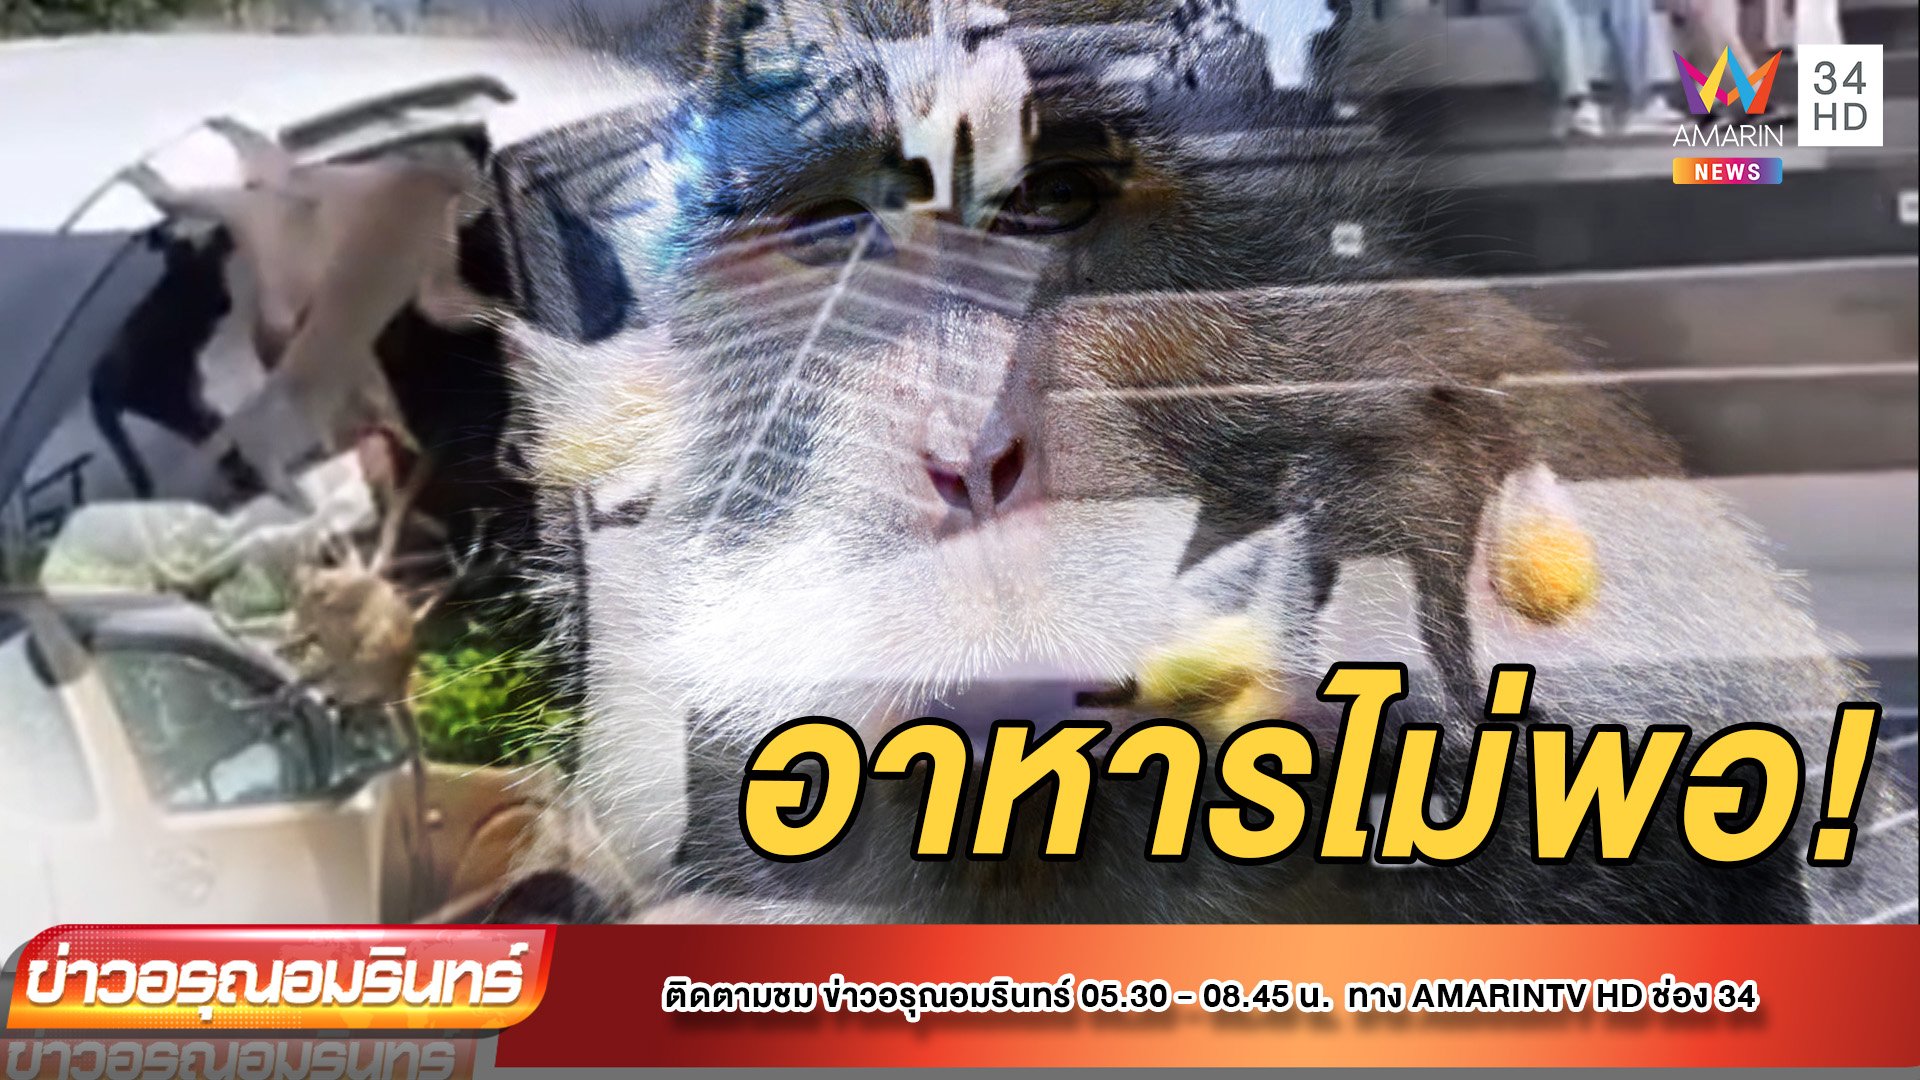 หิวโซ! ลิงเขาสามมุข ขโมยอาหาร นทท. | ข่าวอรุณอมรินทร์ | 24 พ.ค. 65 | AMARIN TVHD34